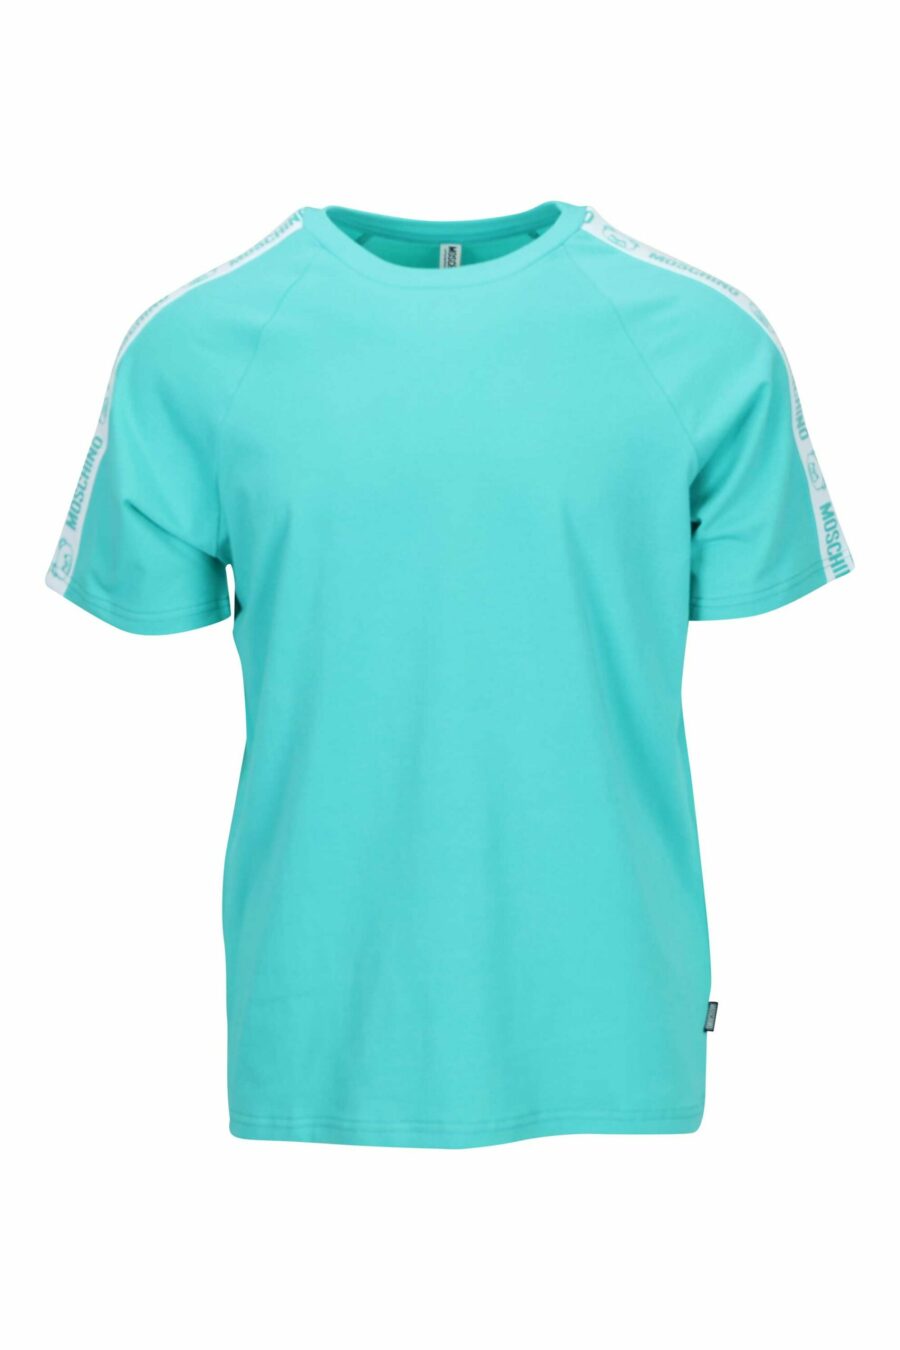 T-shirt azul água-marinha com o logótipo do urso "underbear" na faixa do ombro - 667113602400 scaled